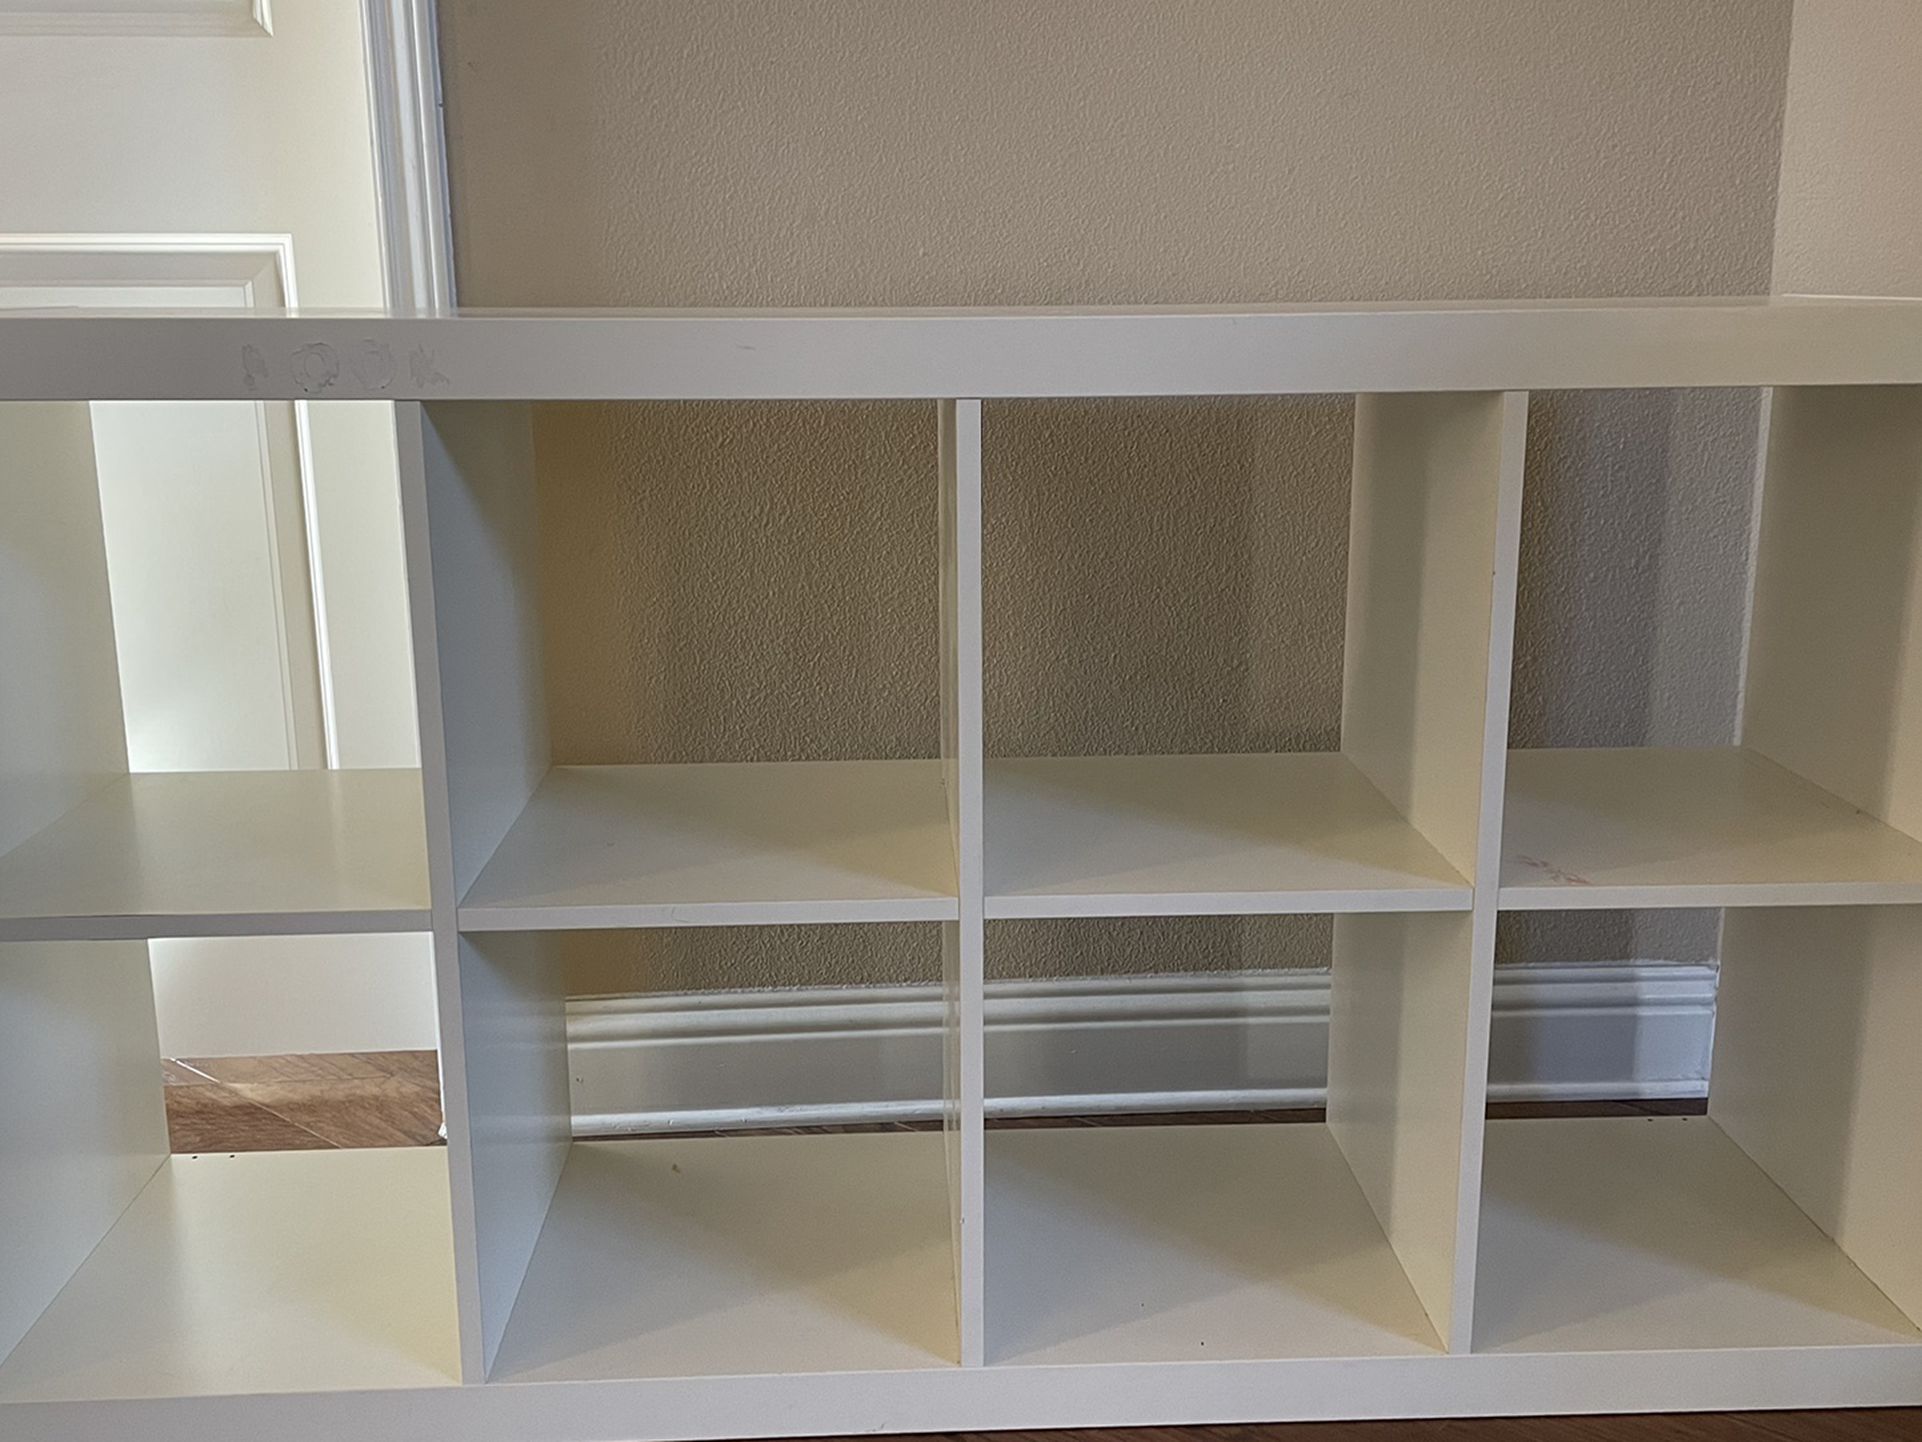 Bookshelf/storage